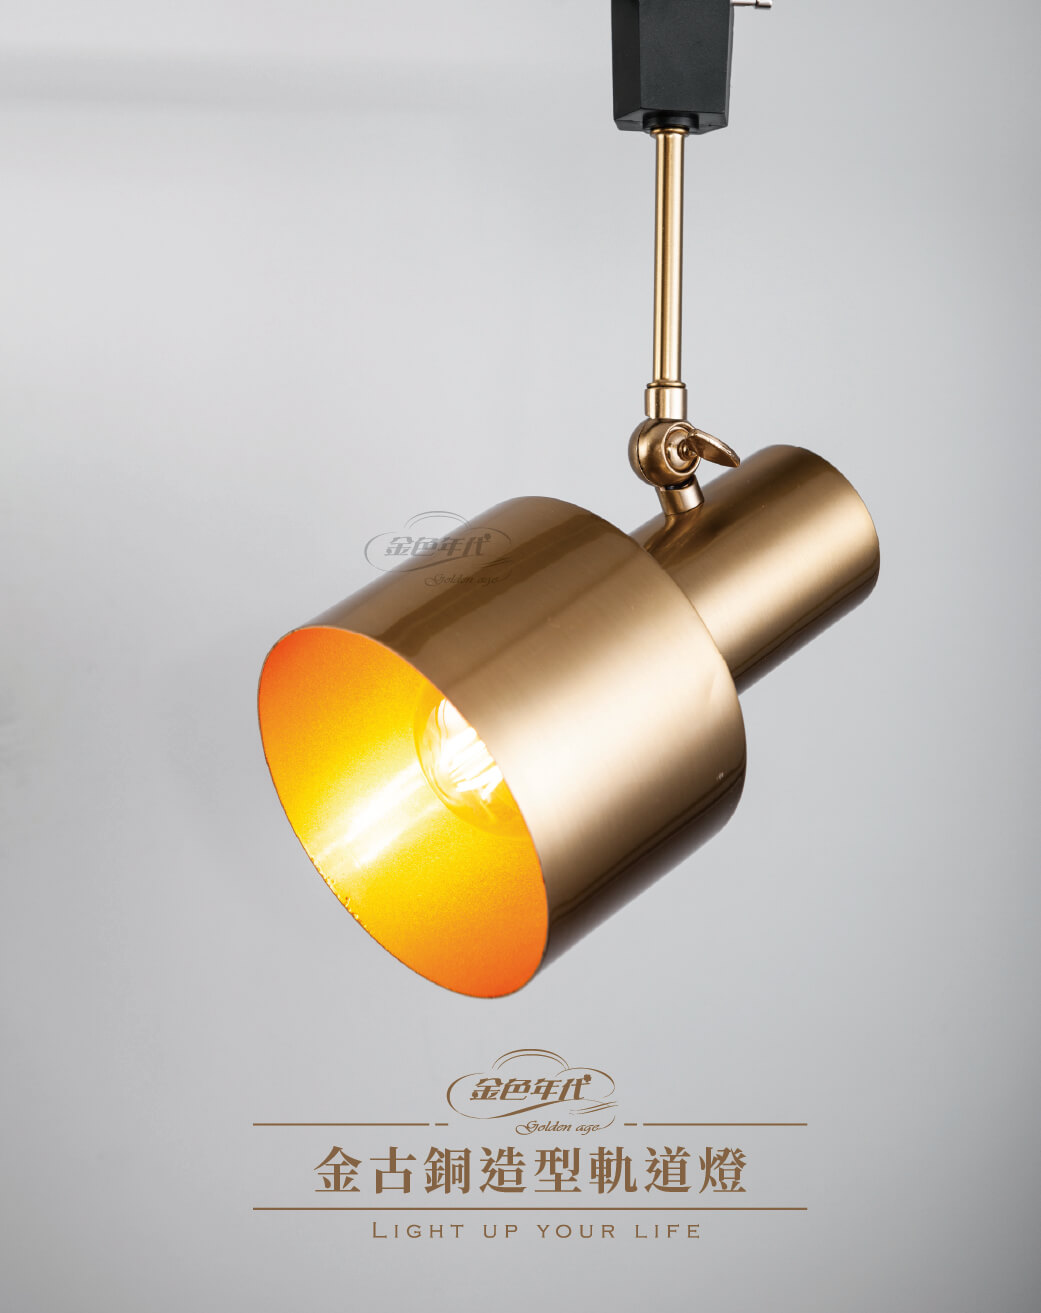 GA10官網圖文-金古銅造型軌道燈01